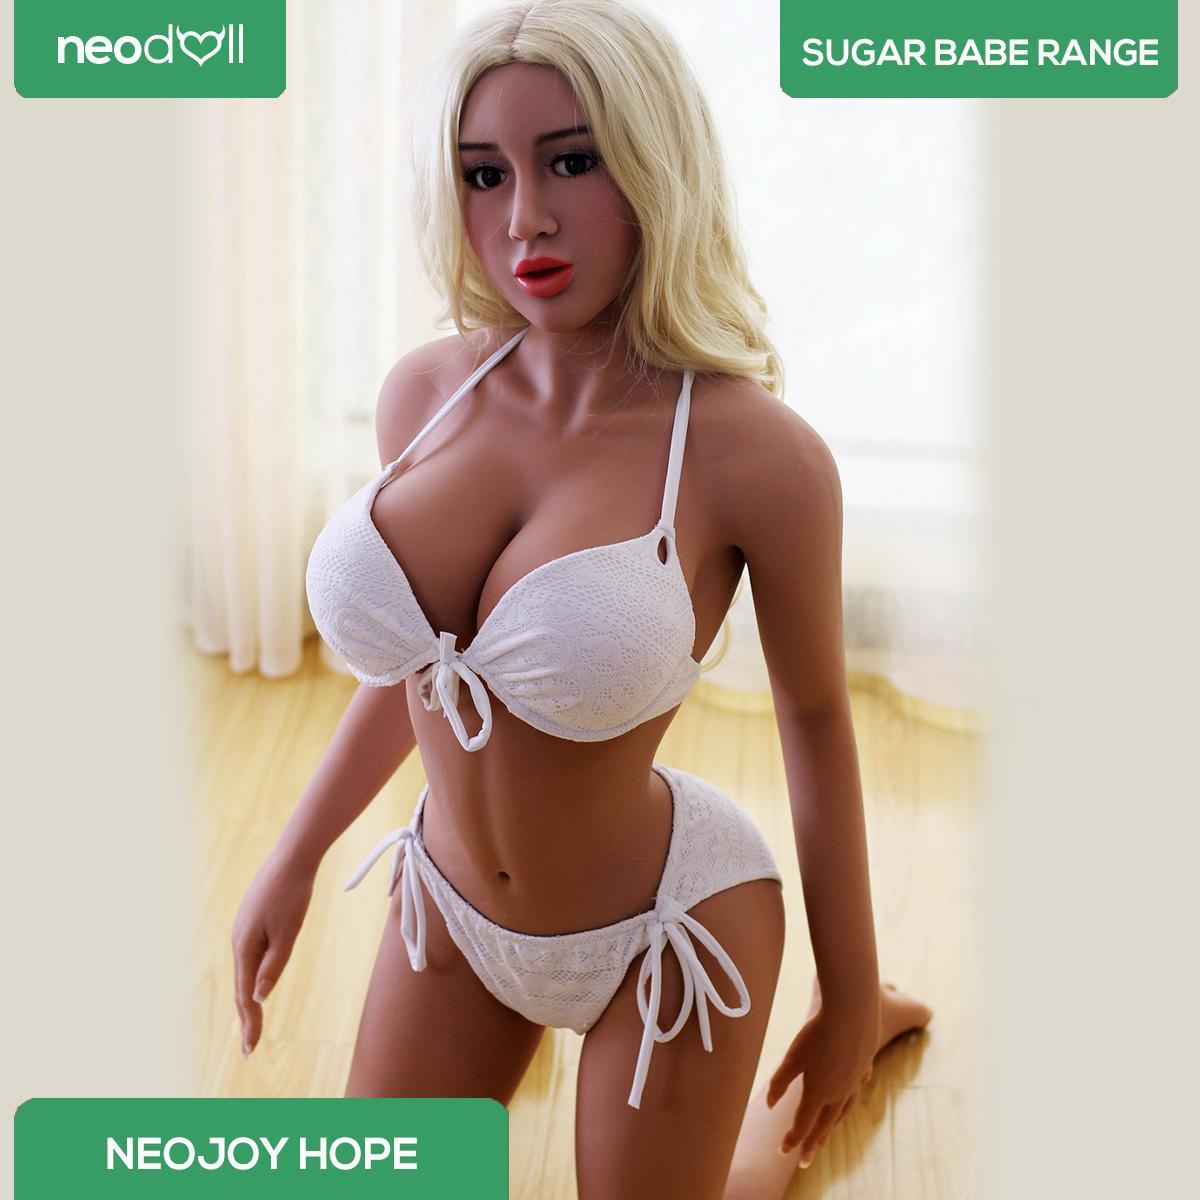 Neodoll Sugar babe - Hope - Realistic Sex Doll - Gel Breast - Uterus - 158cm-Tan